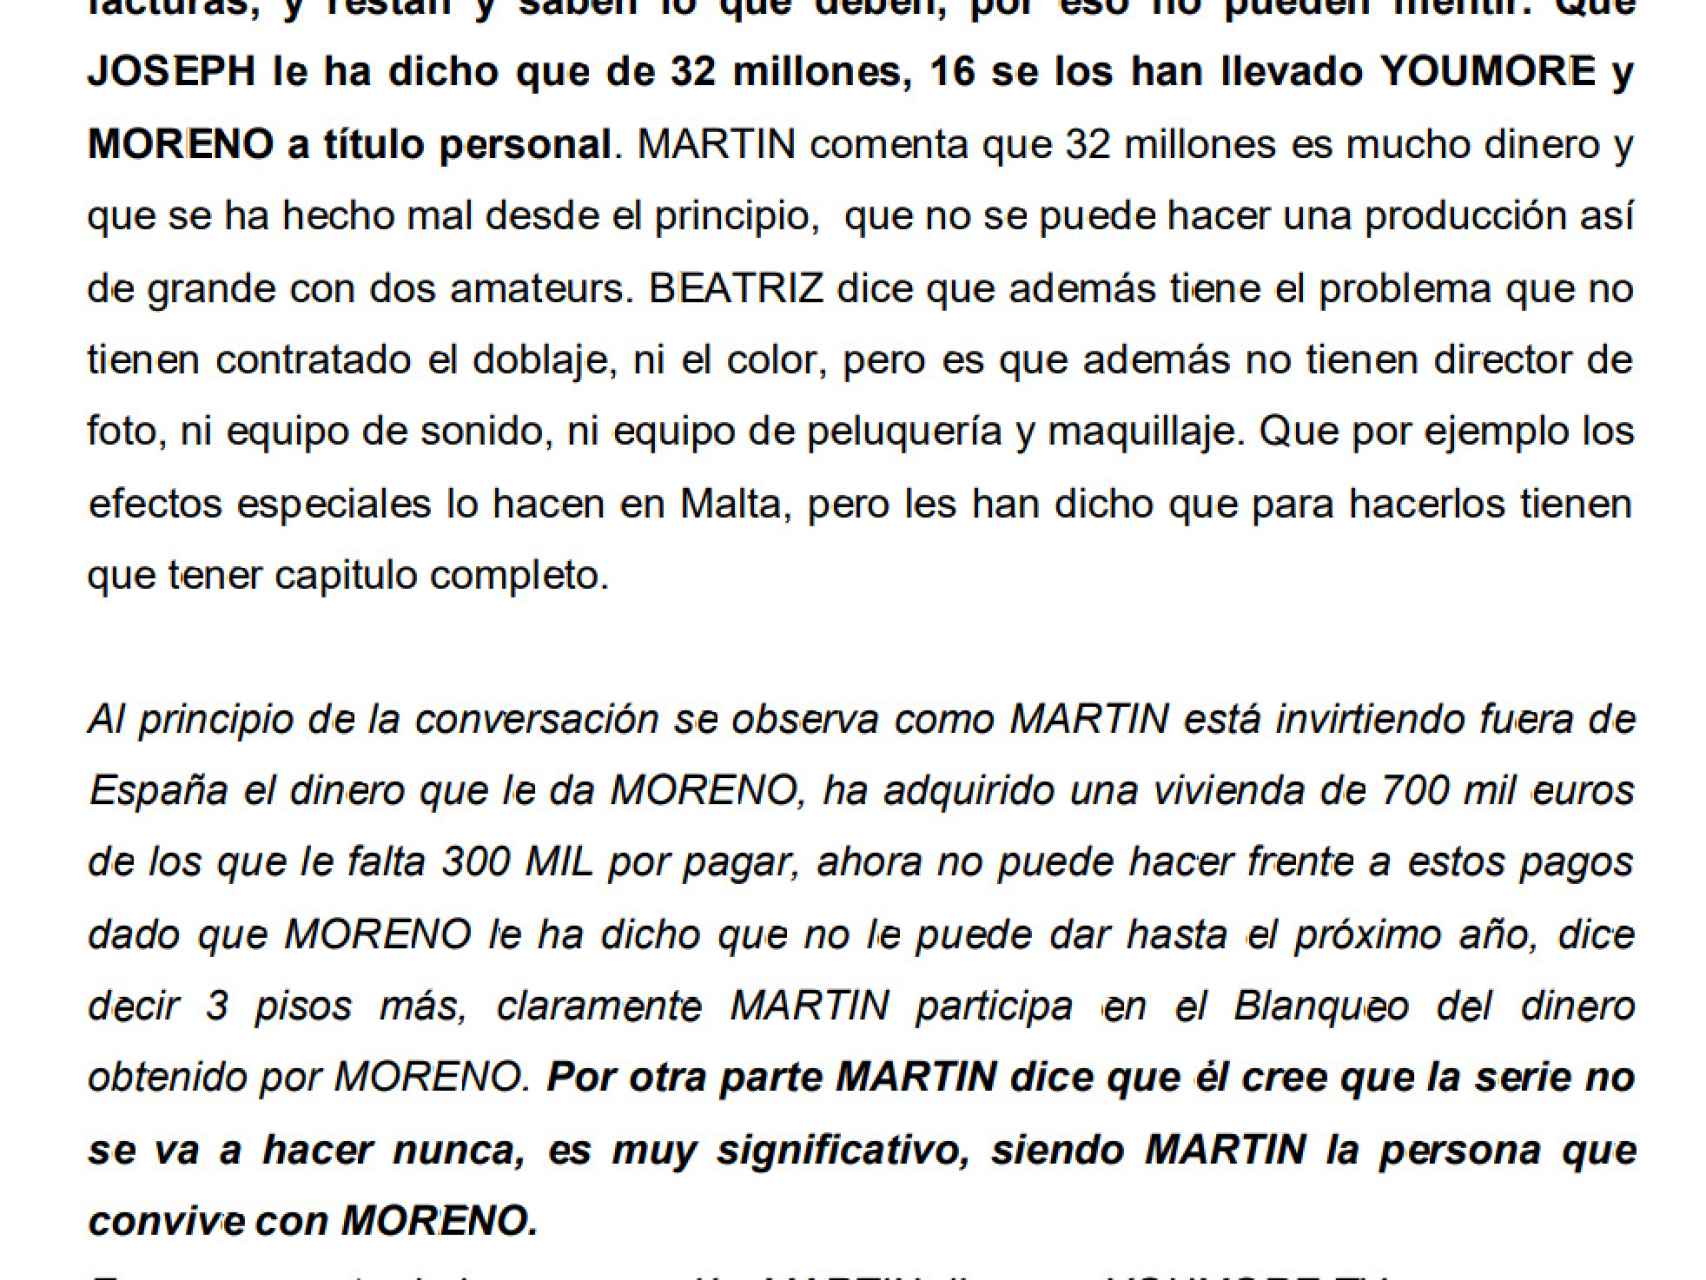 José Luis Moreno no había terminado de grabar ni un solo capítulo de la serie el pasado mes de diciembre, según su colaboradora Beatriz Sánchez.